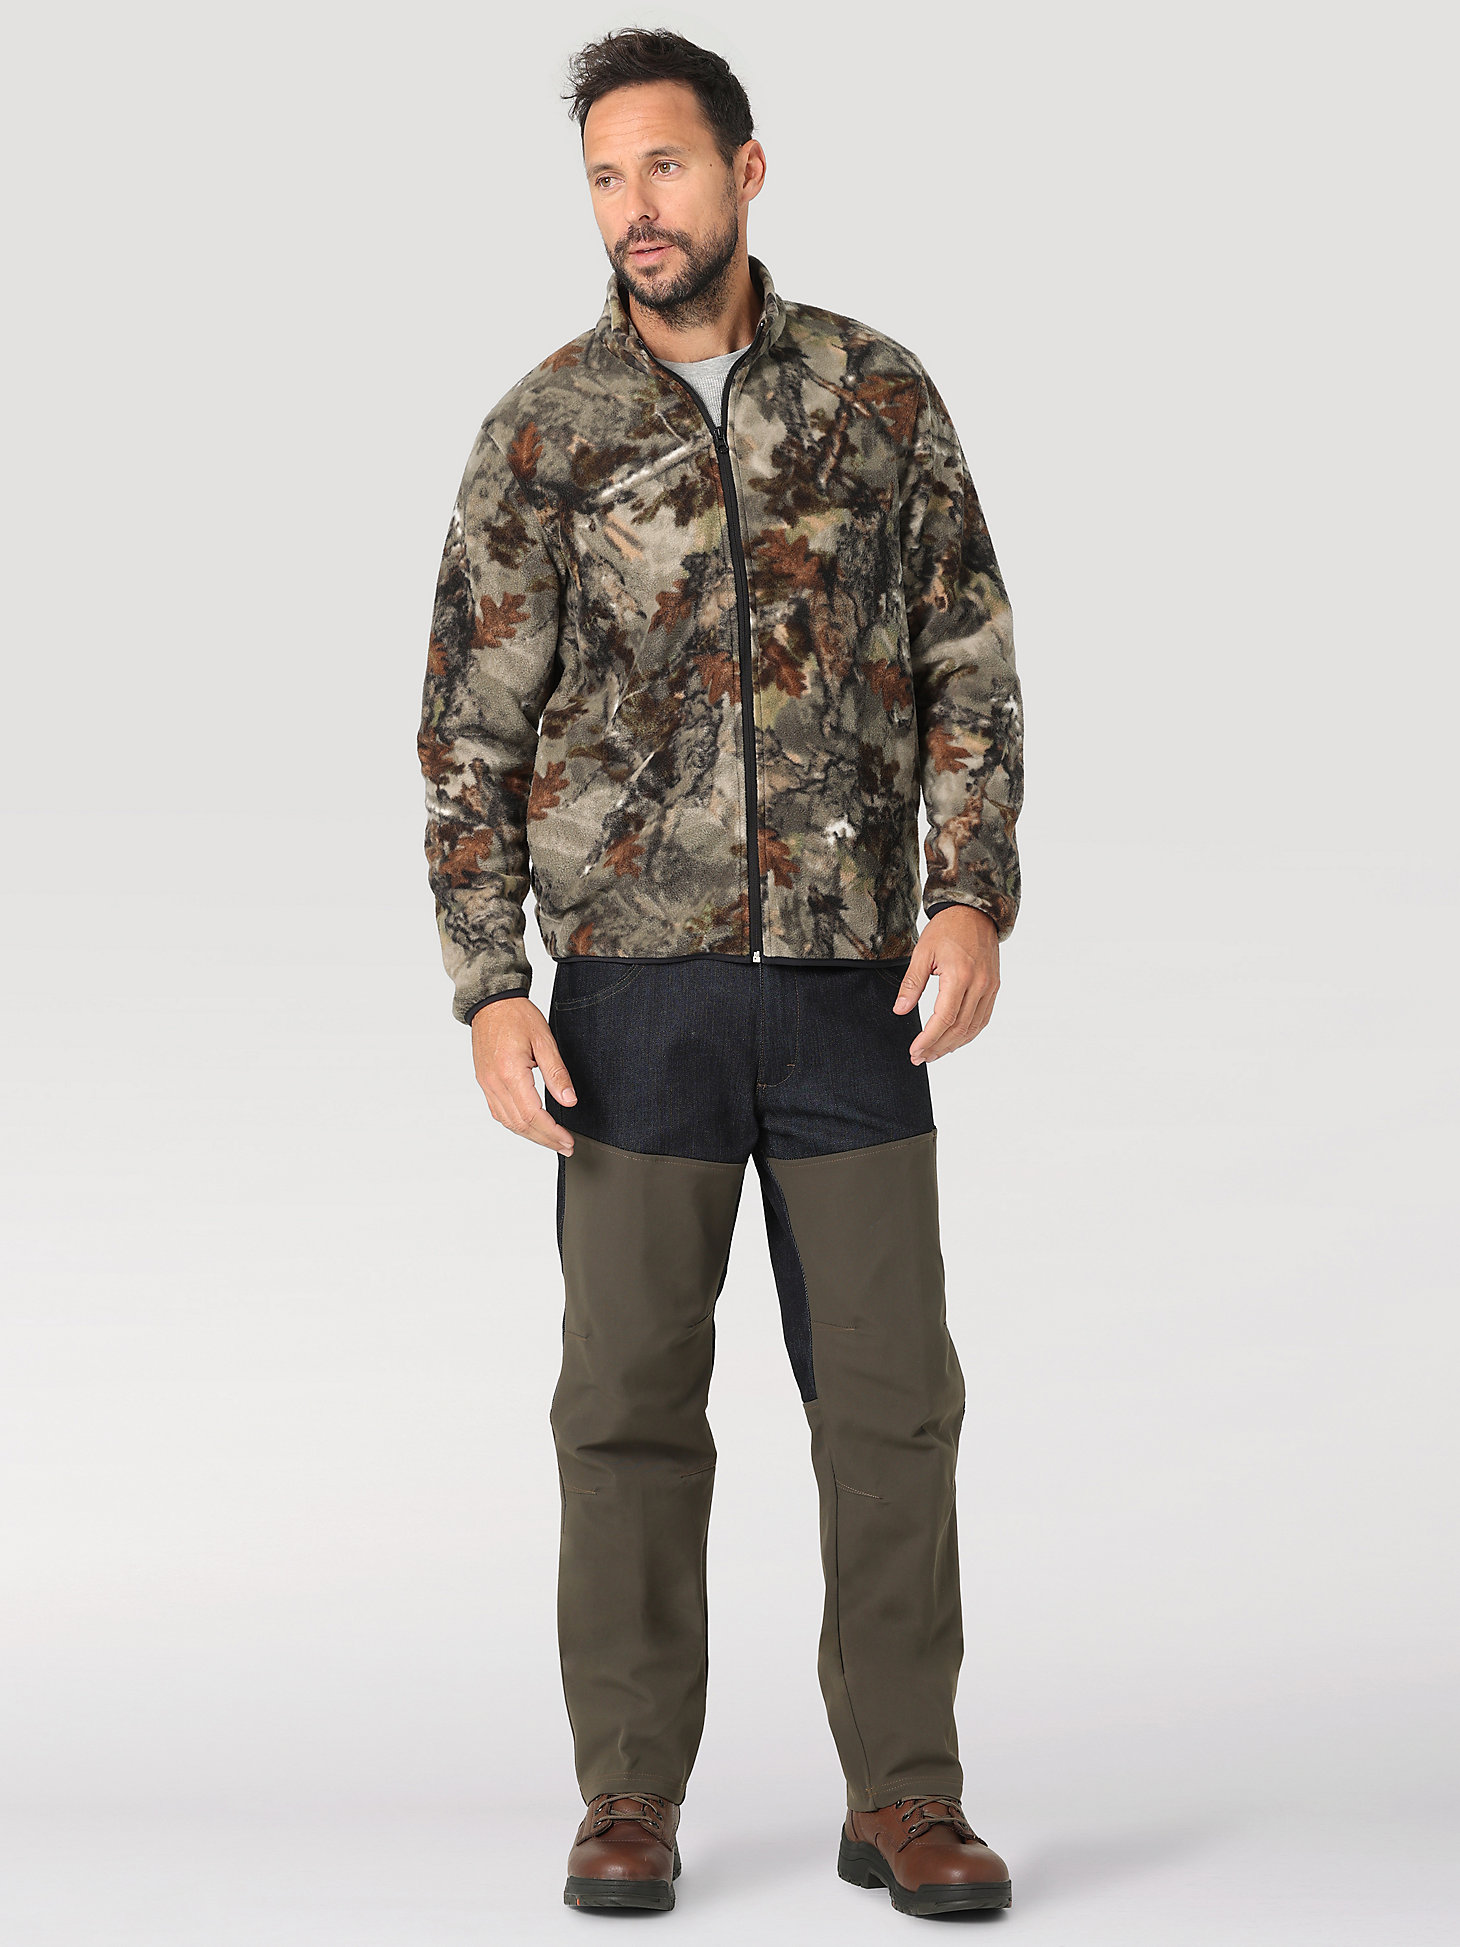 ATG Hunter™ Men's Fleece Jacket in Warmwoods Camo alternative view 1